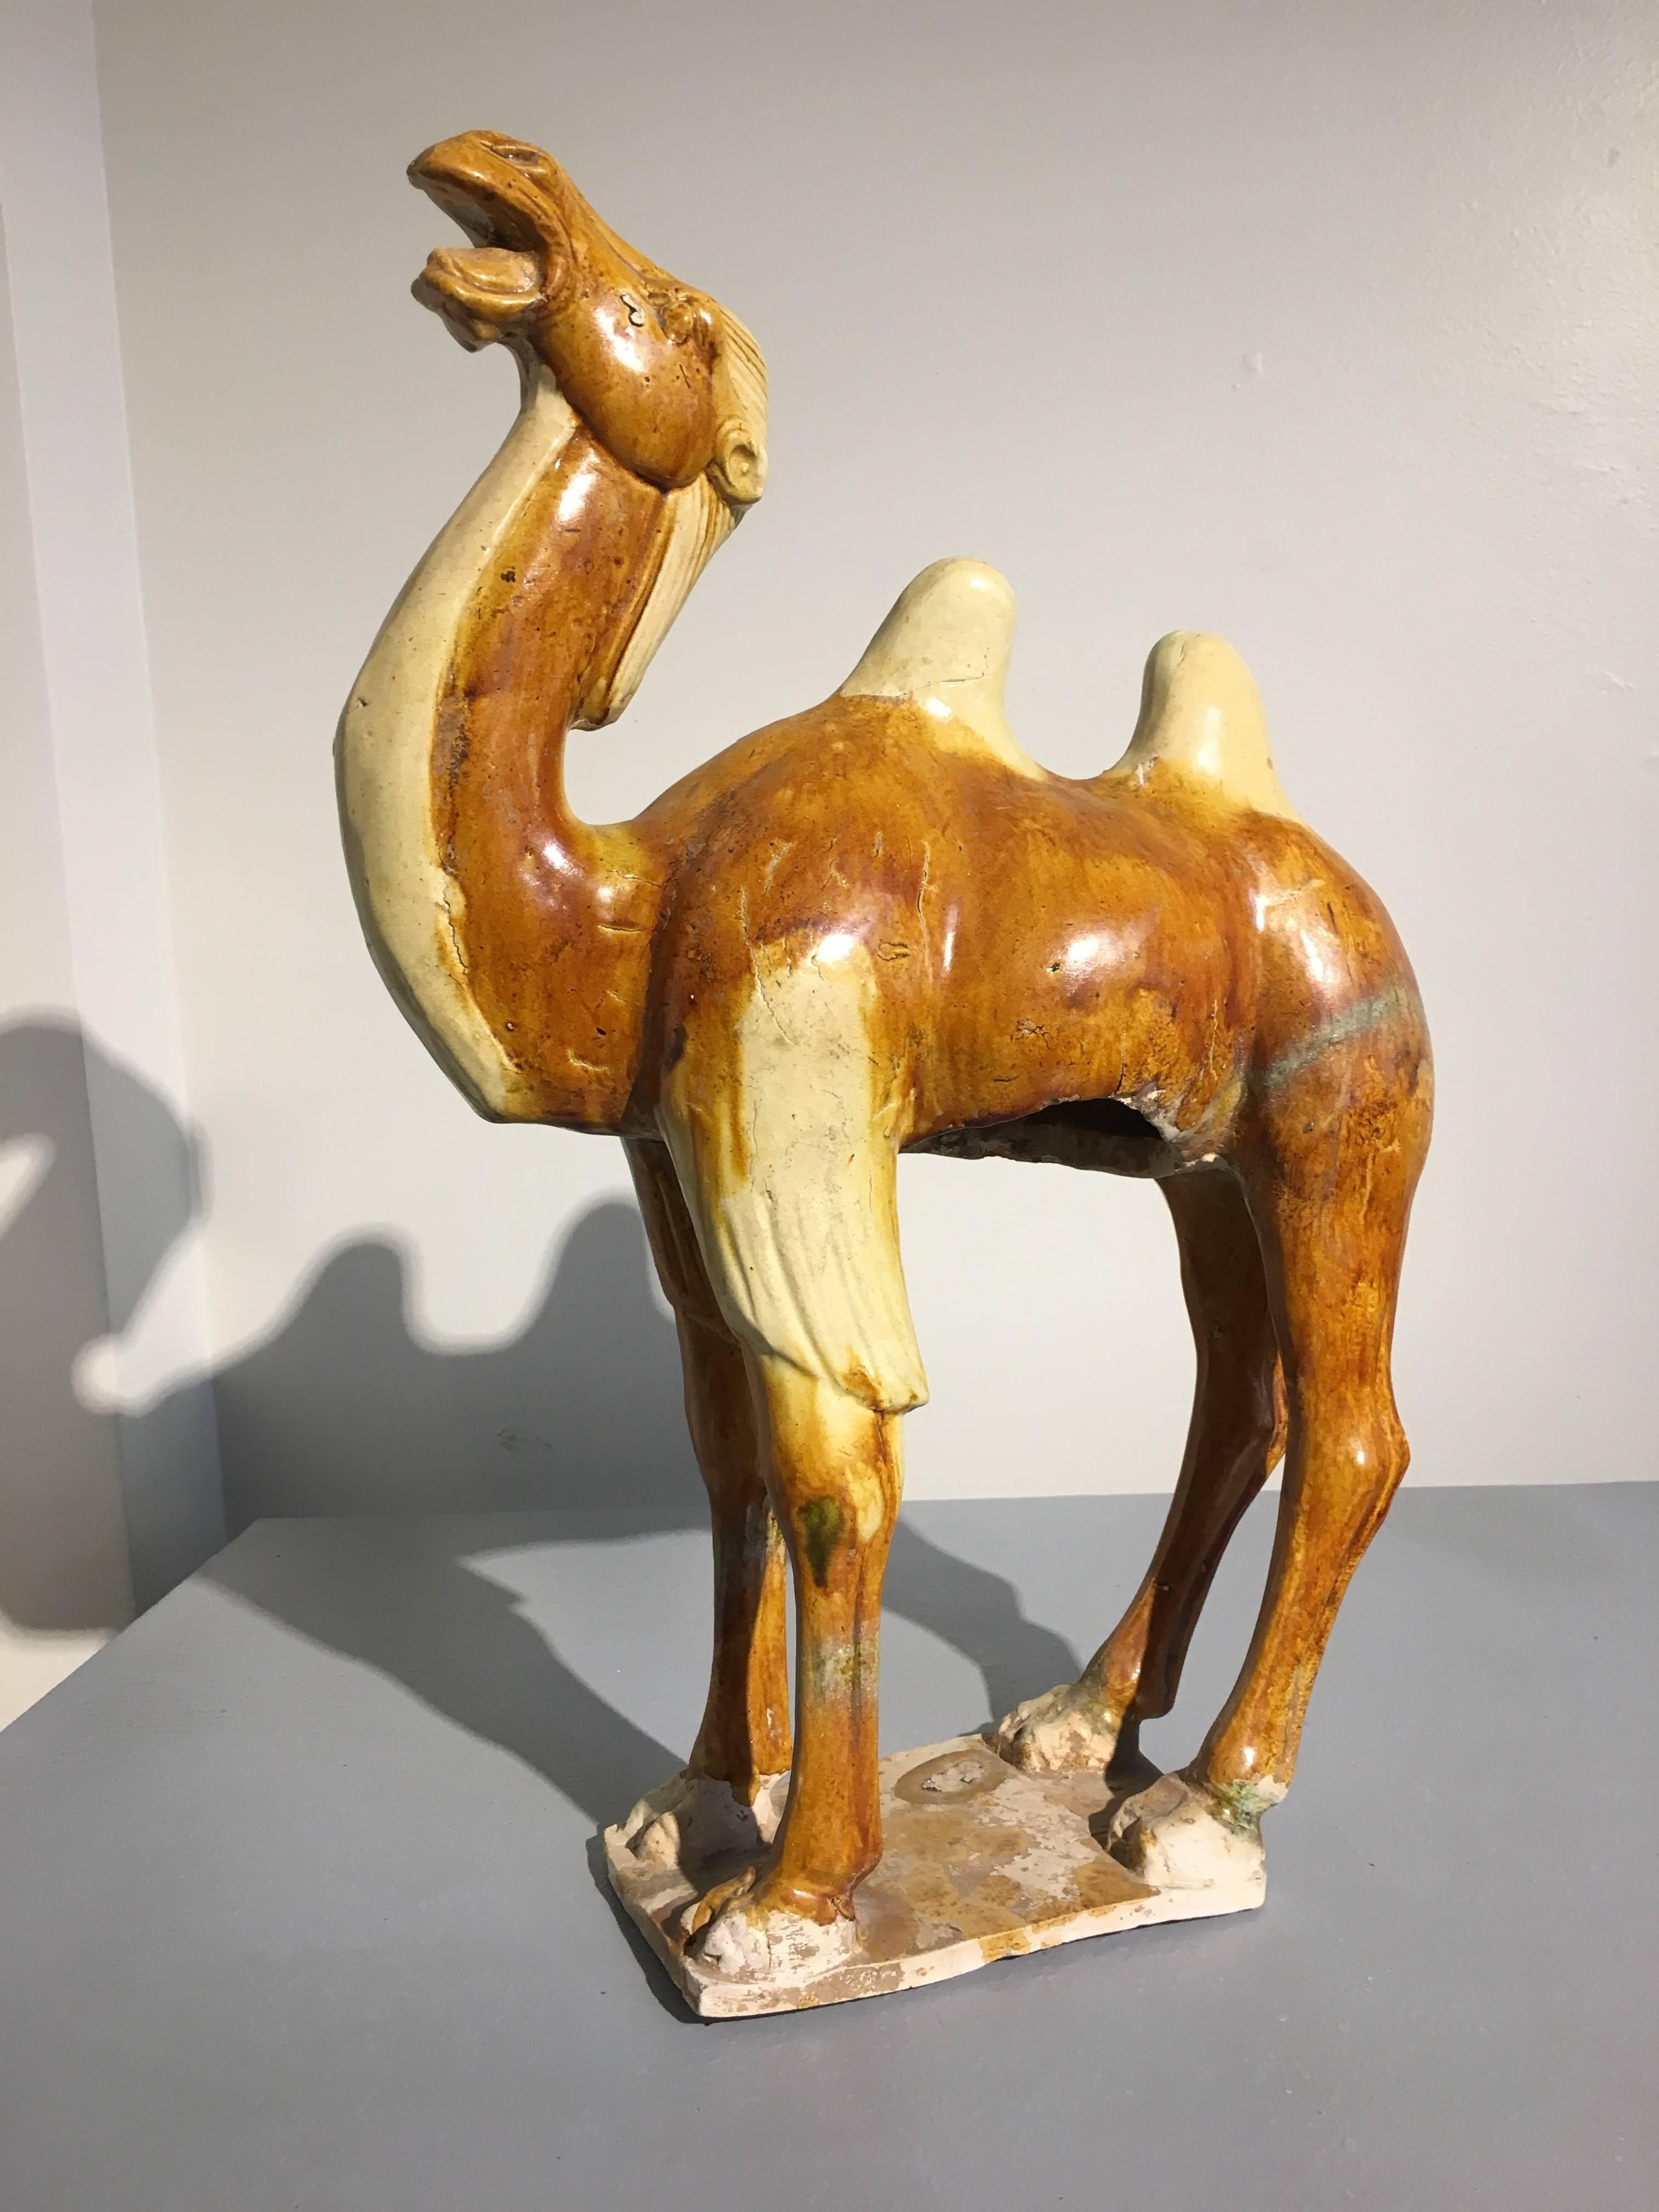 Modèle évocateur en poterie vernissée sancai de la dynastie chinoise des Tang (618 à 906 AD) représentant un chameau brayant. Le chameau, bien modelé, se tient debout sur un socle rectangulaire, le cou relevé, la tête rejetée en arrière et la bouche